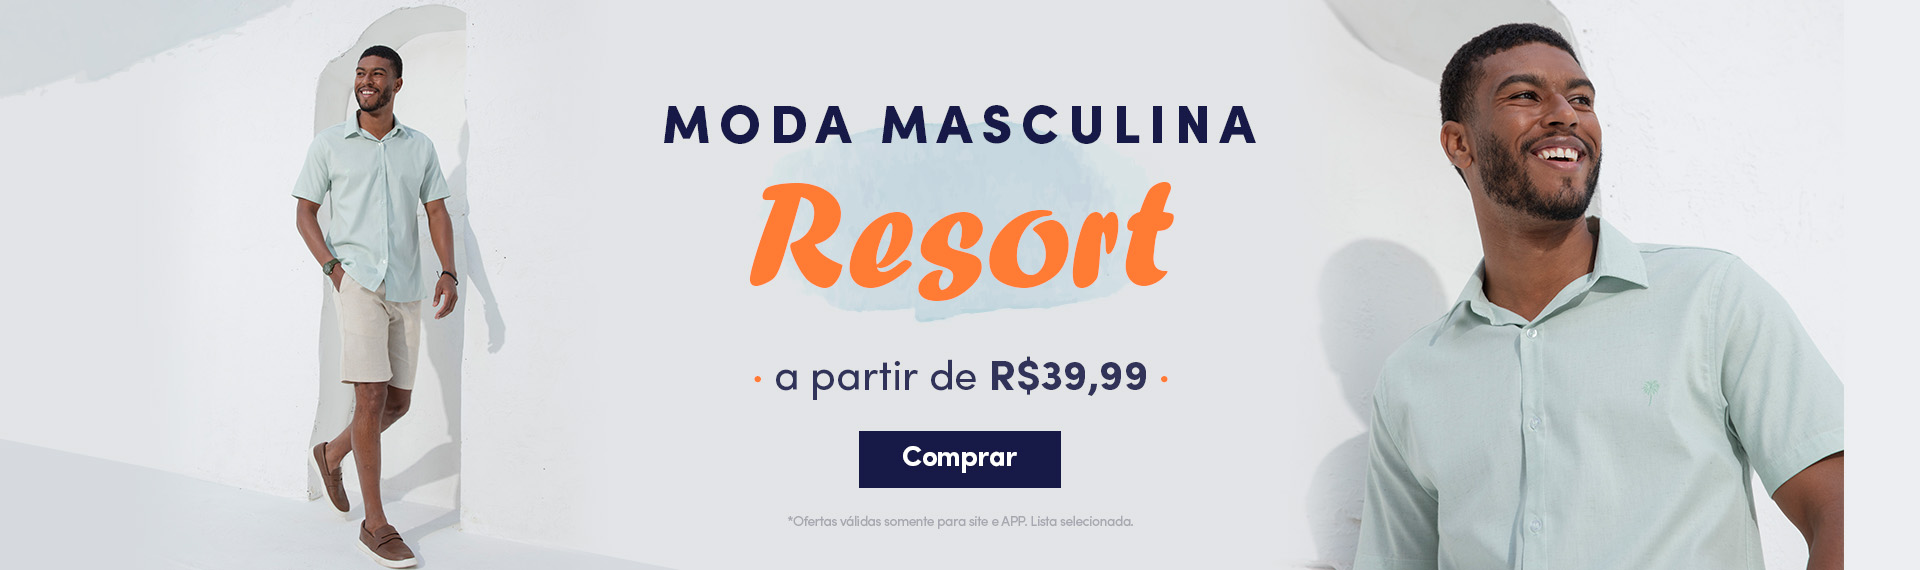 Moda Masculina Resort a partir de R$39,99